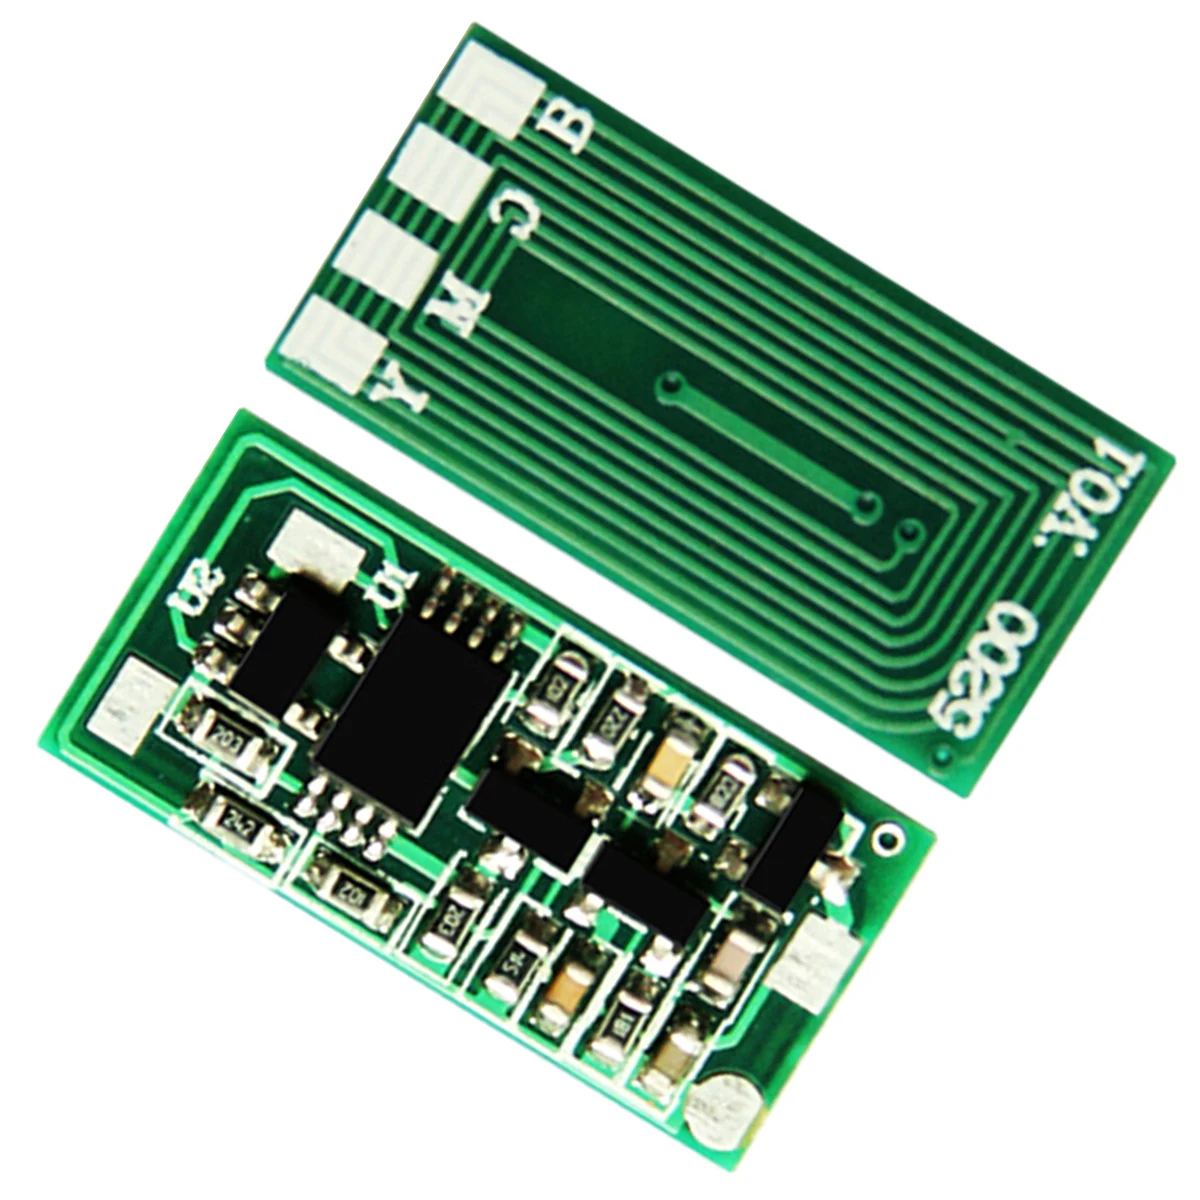 

Toner Chip for Ricoh Gestetner imagio IPSiO Aficio MP-C-2051 MP-C-2551 MPC-2030 MPC-2050 MPC-2530 MPC-2550 MPC-2550SPF AD SPF RC